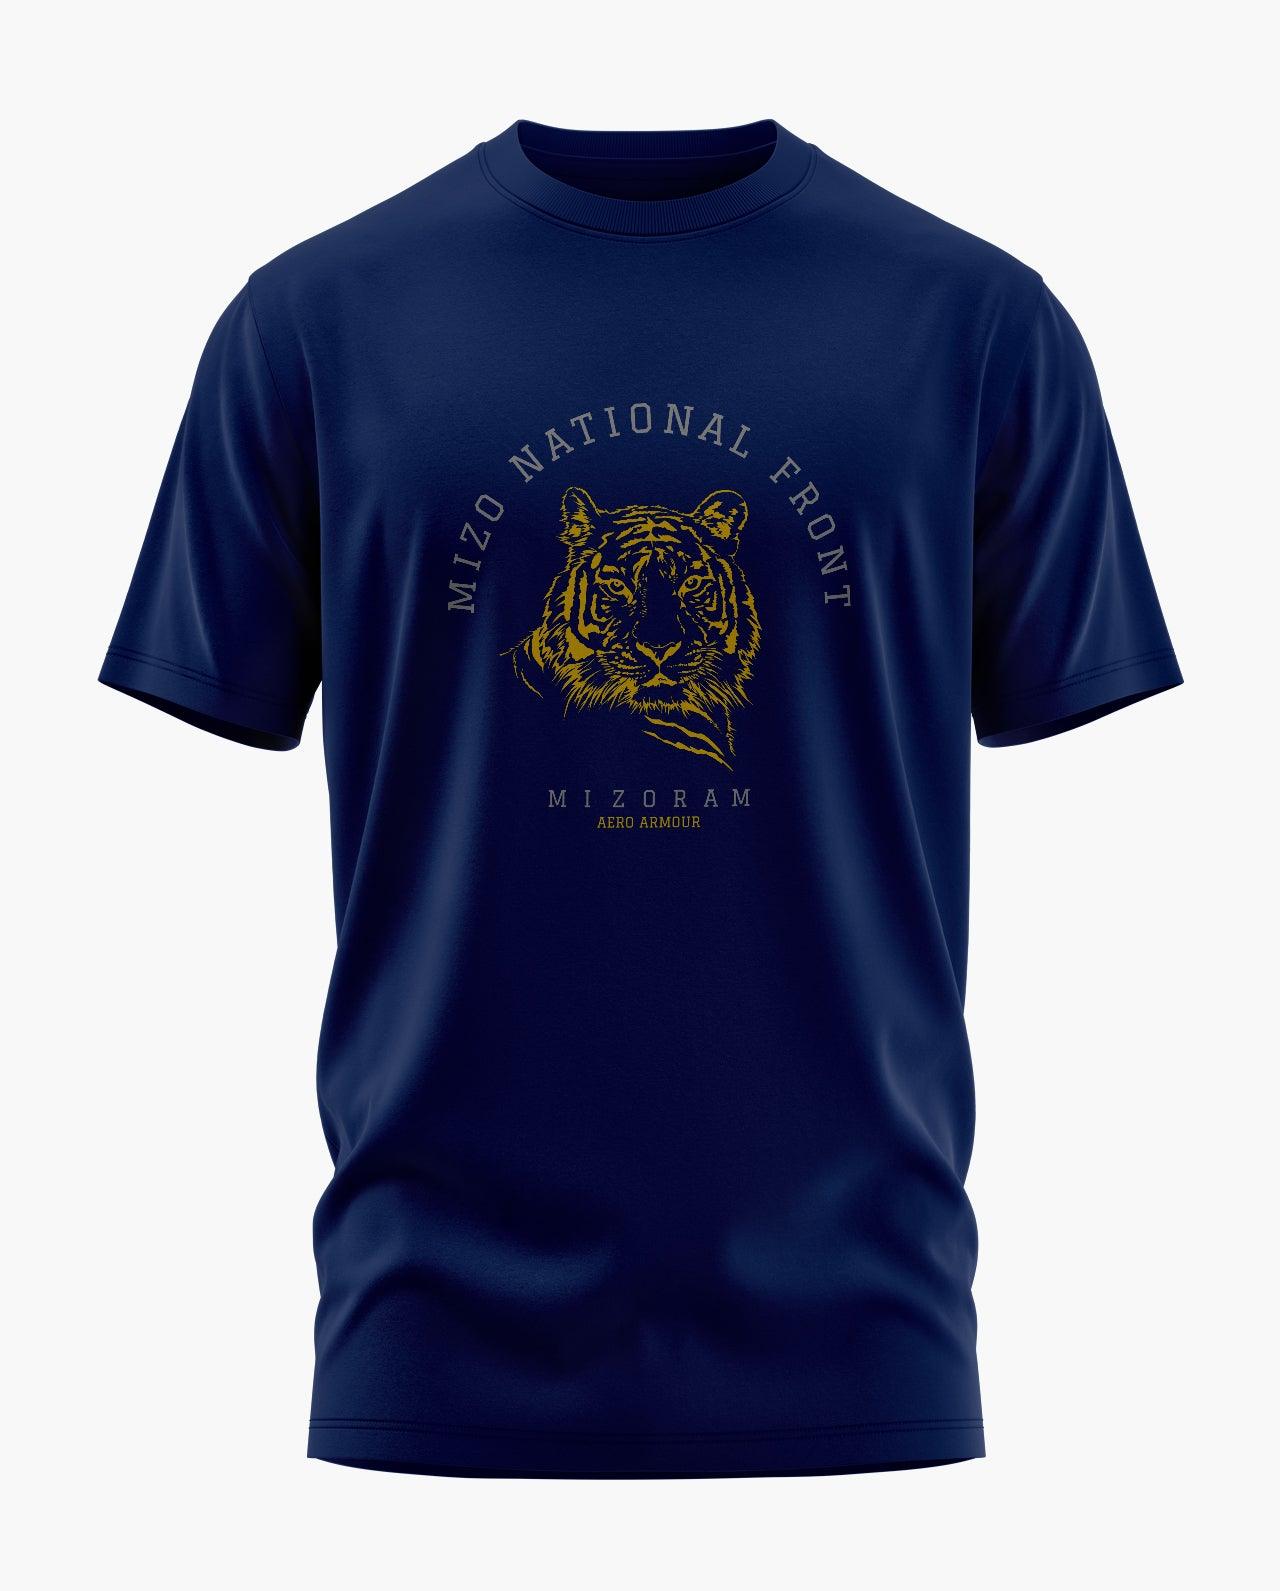 Mizo National Front T-Shirt - Aero Armour